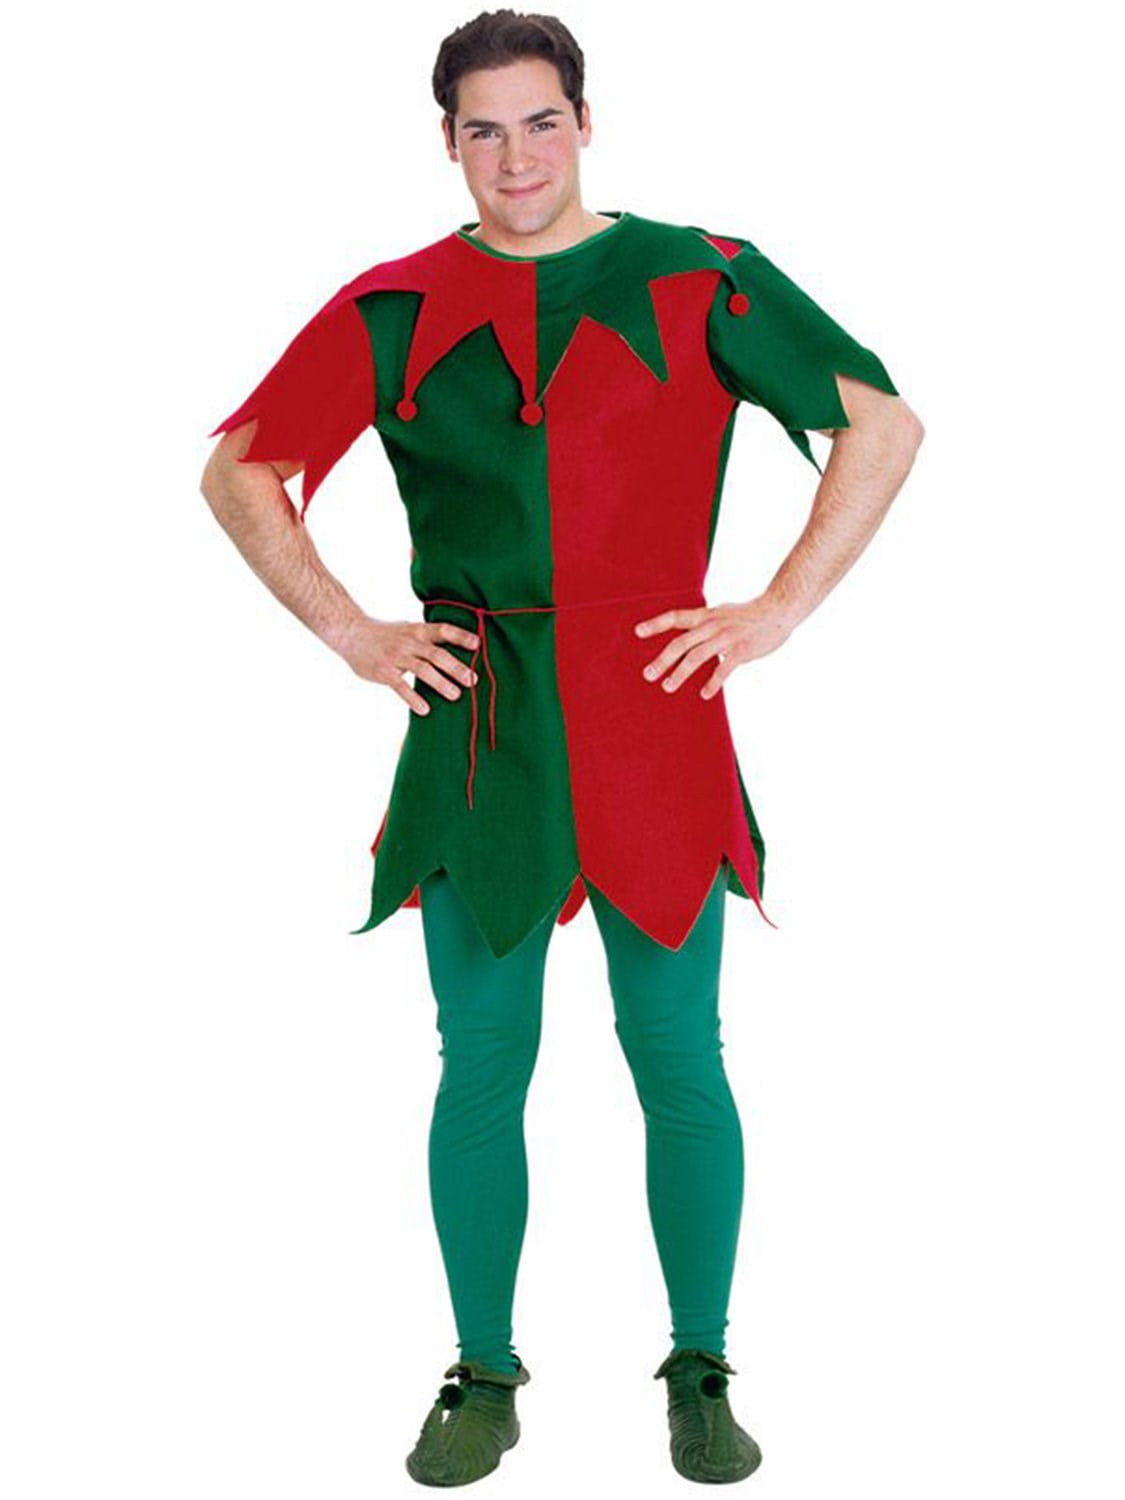 Men's Christmas Elf Costume Rash Guard for Men Boys Green White Red Stripe